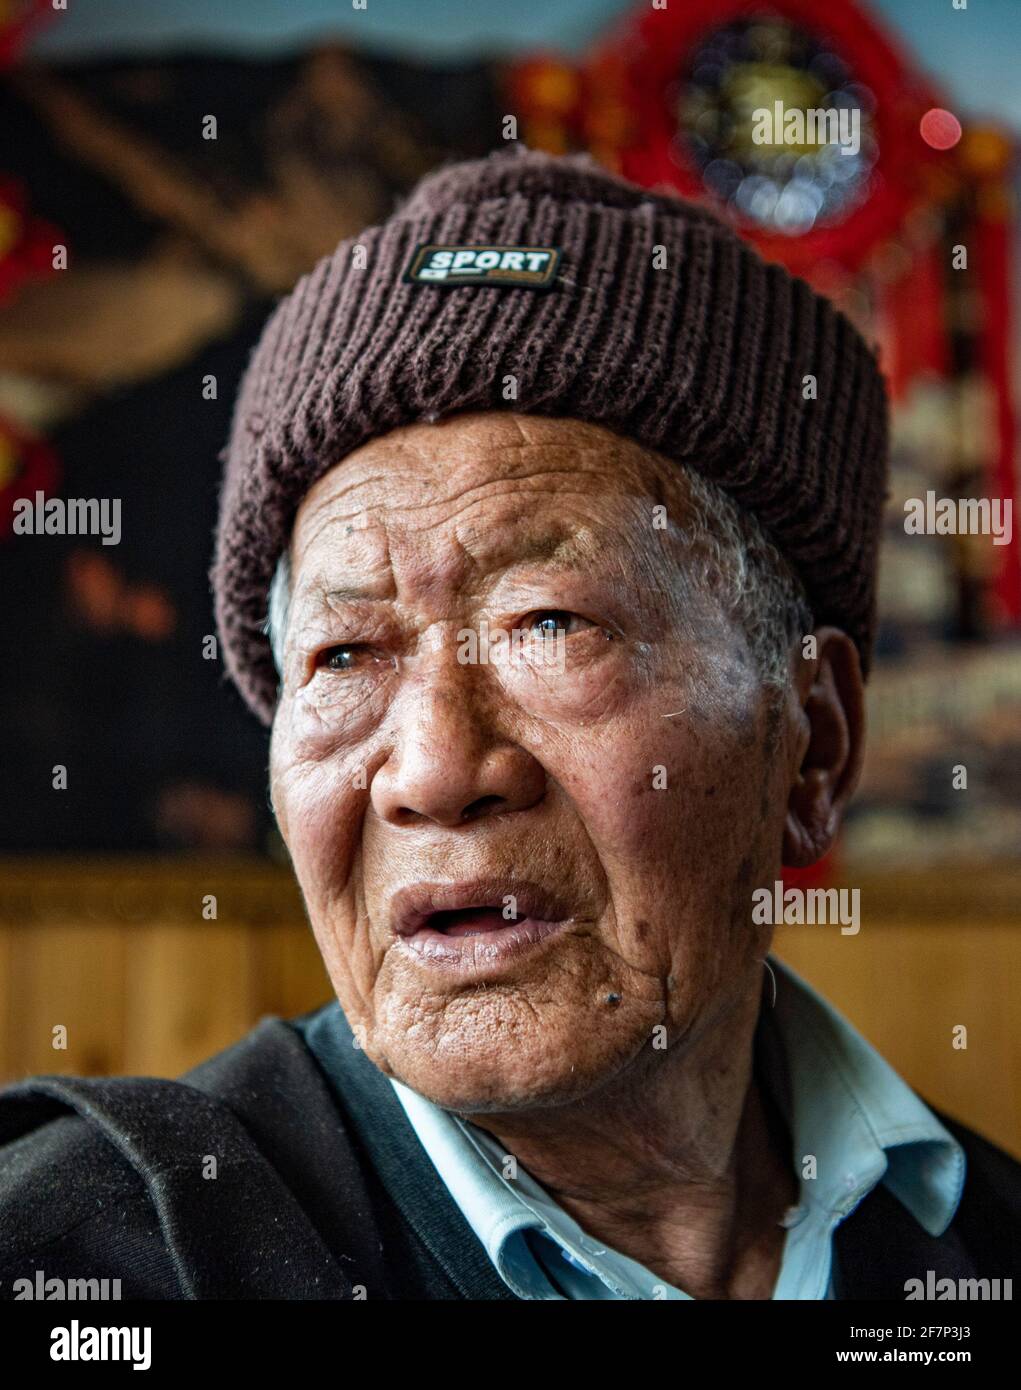 (210409) -- LHASA, 9 aprile 2021 (Xinhua) -- Ngawang Nyima pone per un ritratto alla sua residenza nella città di Qamdo, regione Autonoma del Tibet della Cina sudoccidentale, 18 febbraio 2021. Ngawang Nyima, 84 anni, è nato a Naixi Township, nella contea di Mangkam, nella città di Qamdo, nella regione autonoma del Tibet della Cina sudoccidentale, ed era un serf. Carico di pesanti tasse, iniziò a gregge di pecore per i padroni di casa quando non aveva più di otto anni, e fu costretto a prelevare il bittero da una salina del fiume Lancang. Il sentiero per la saliera era così precipitoso che un singolo passo incauto si sarebbe rovesciato in rapide onde nel fiume Foto Stock